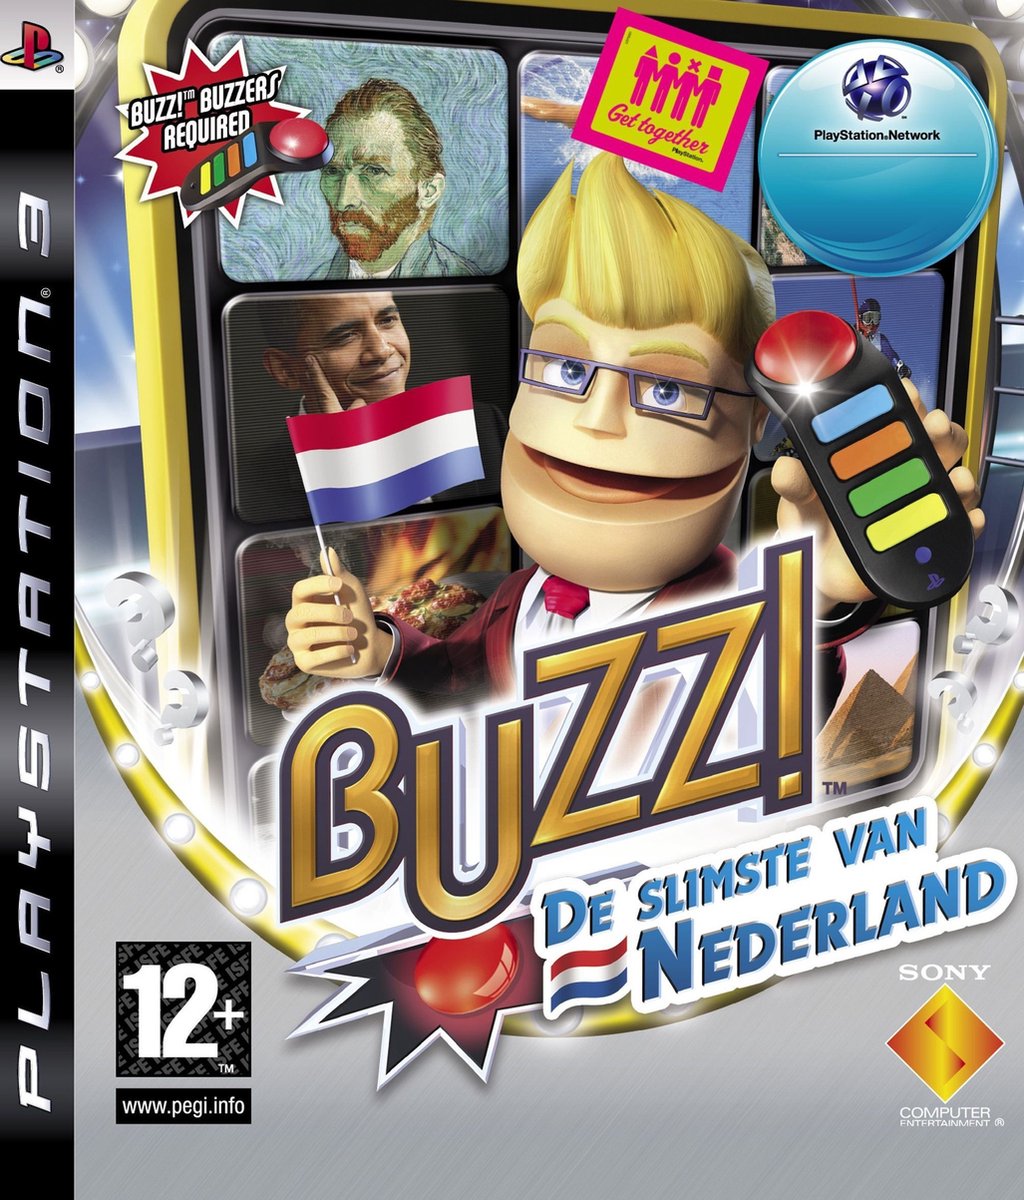 Buzz: De Slimste van Nederland - Sony